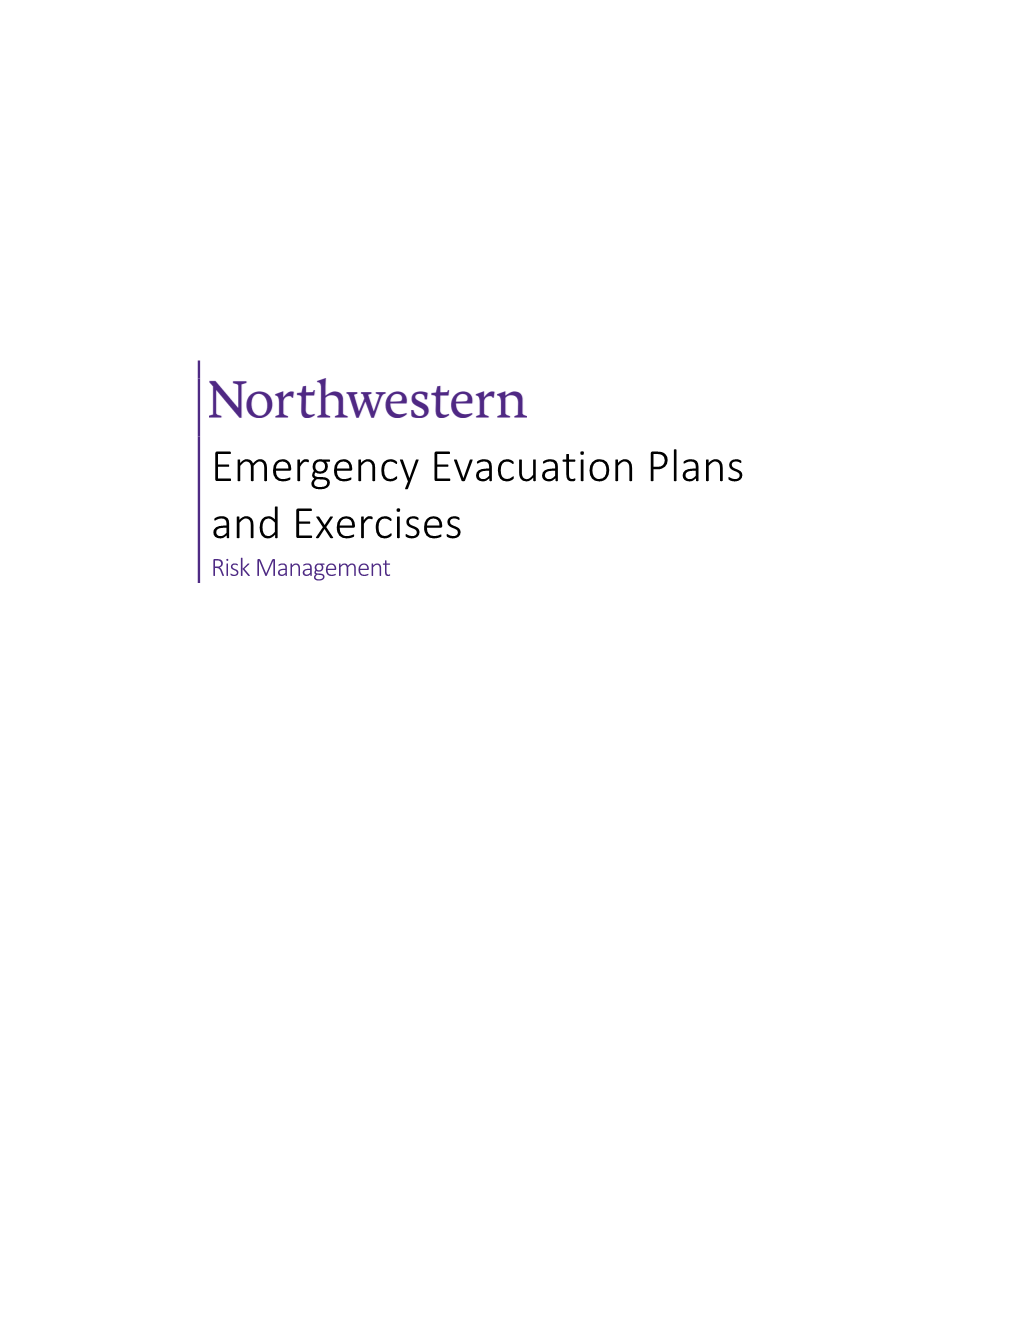 Emergency Evacuation Plans and Exercises Program